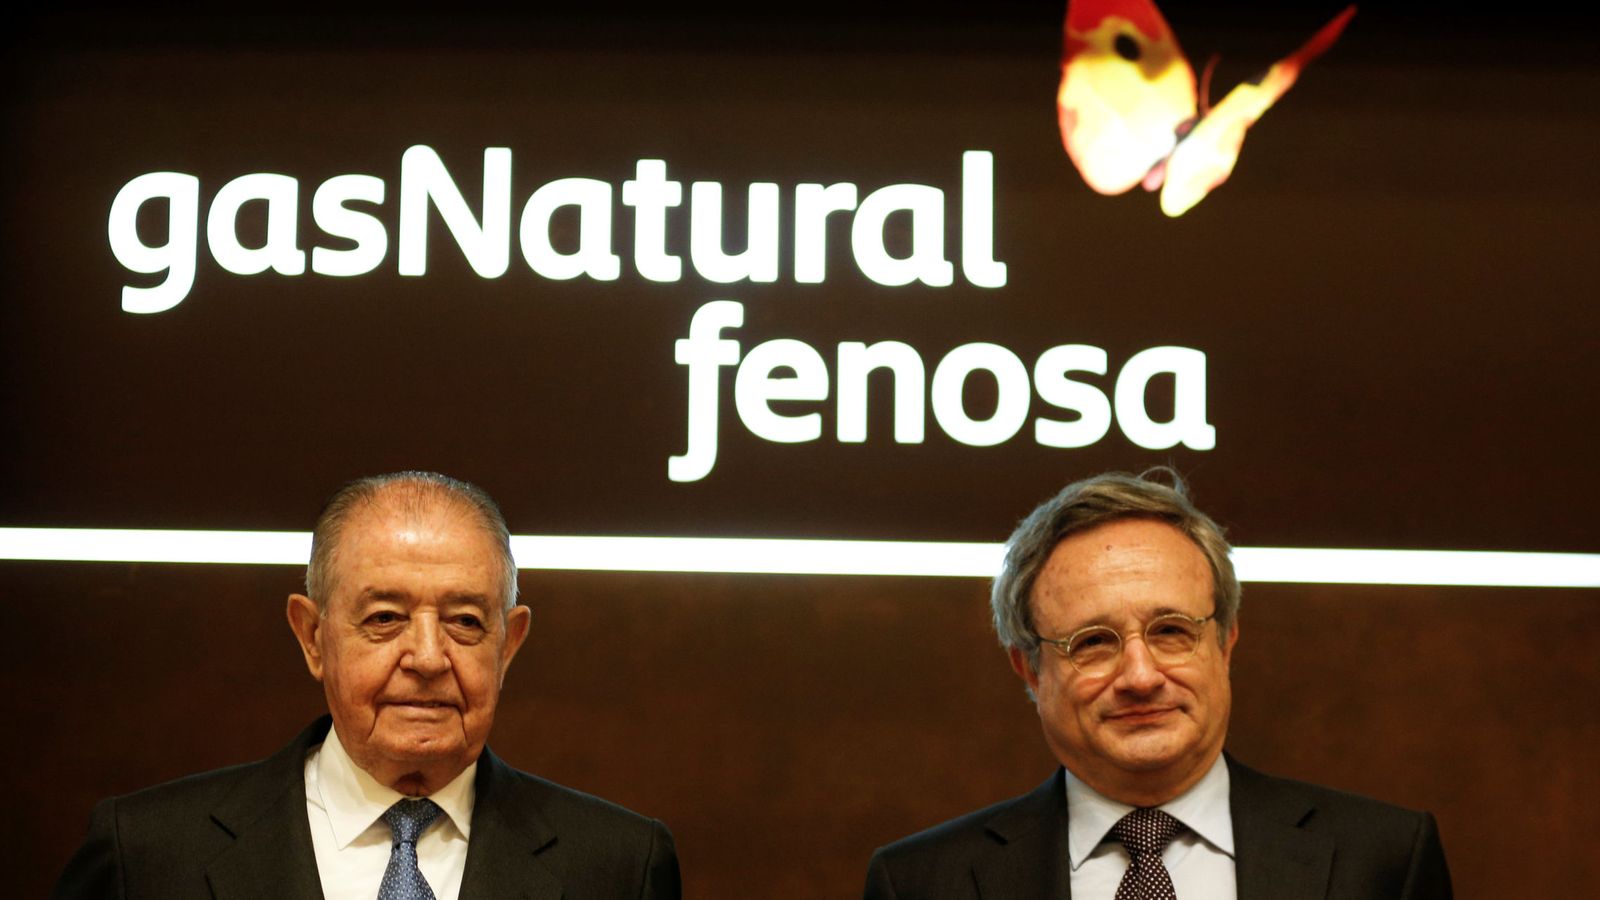 Foto: El presidente del Gas Natural, Salvador Gabarró junto con el consejero delegado Rafael Villaseca